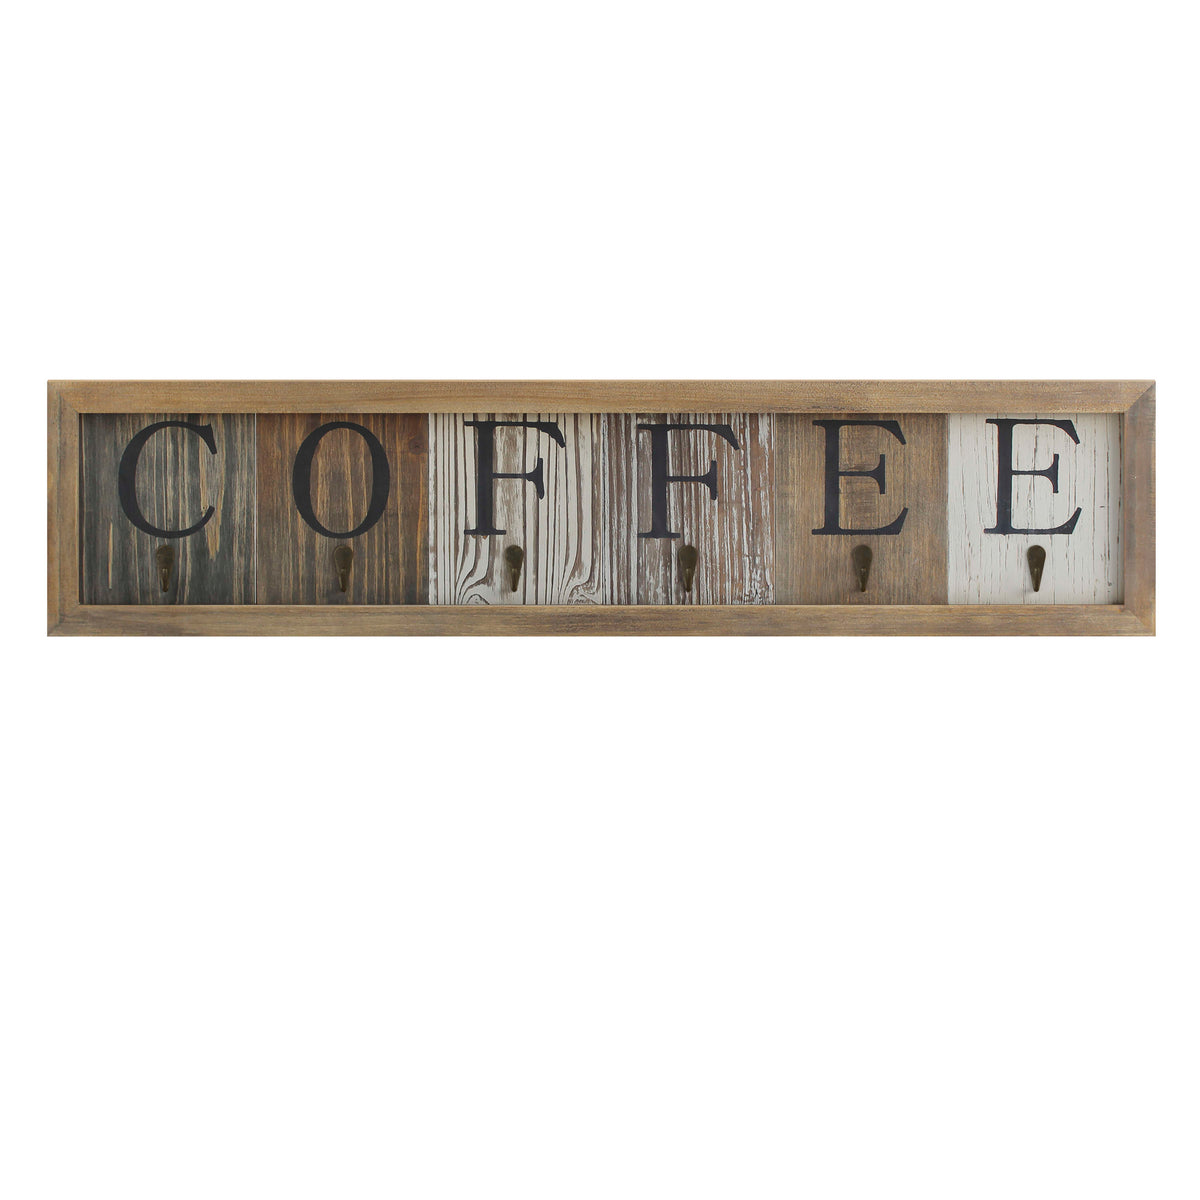 6 Cup Wall Mount Printed Coffee Mug Rack in Distressed Wood Grains